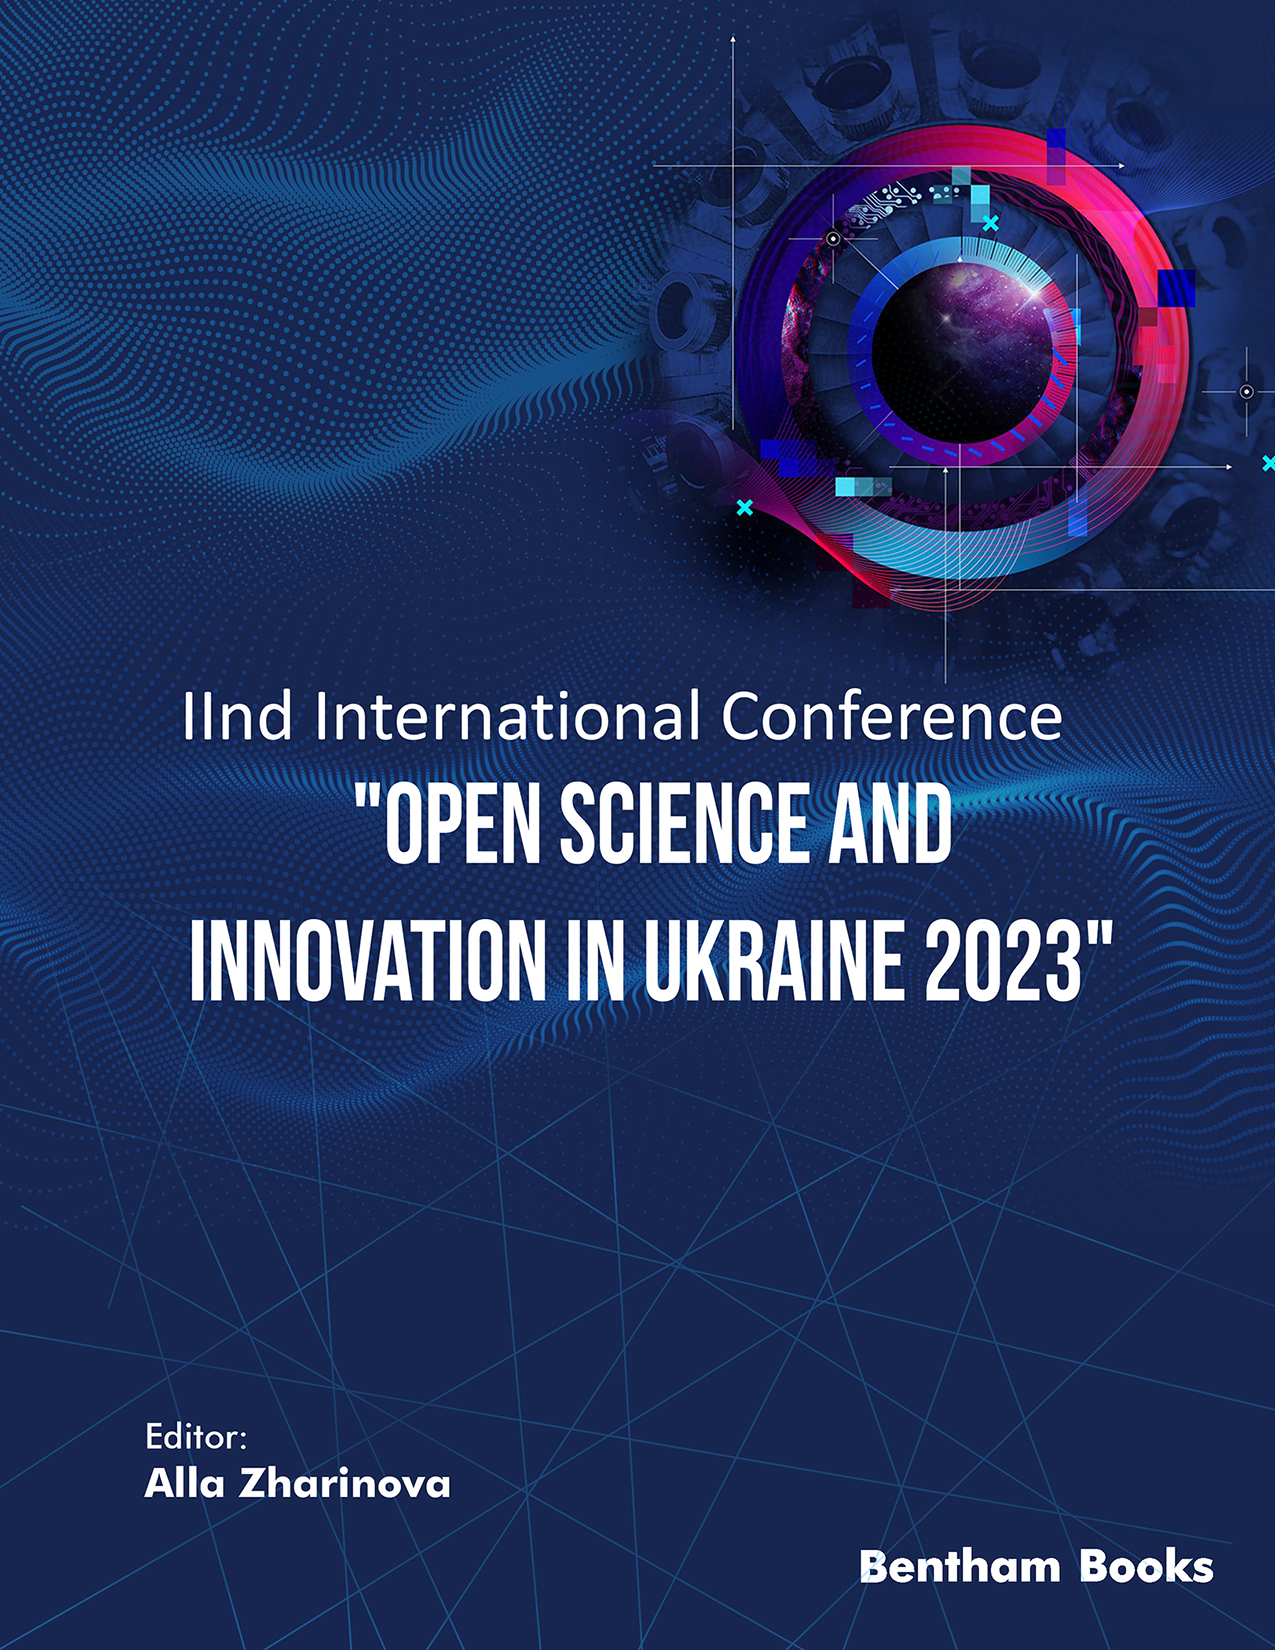 IInd International Conference 